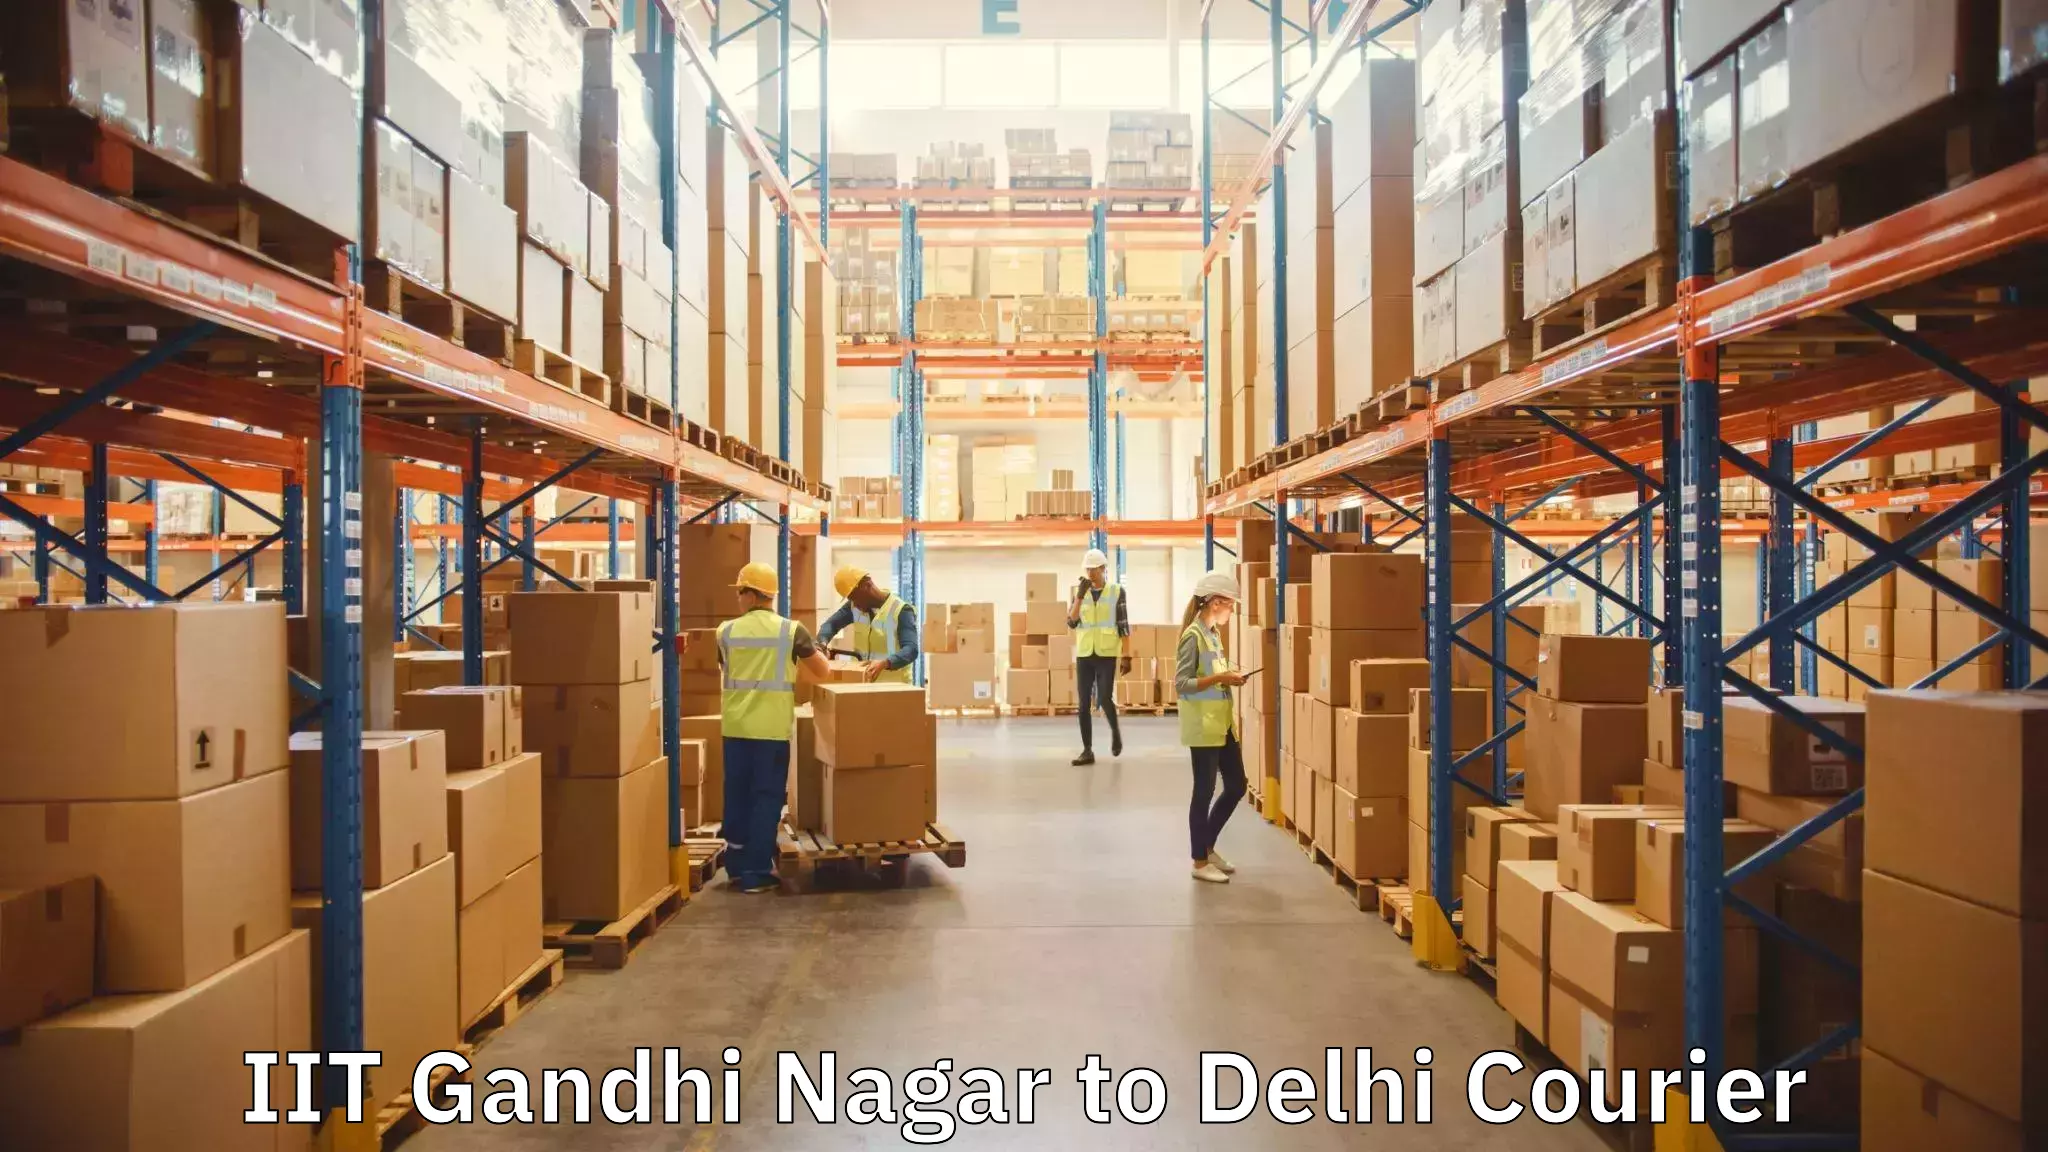 Furniture relocation services IIT Gandhi Nagar to Delhi